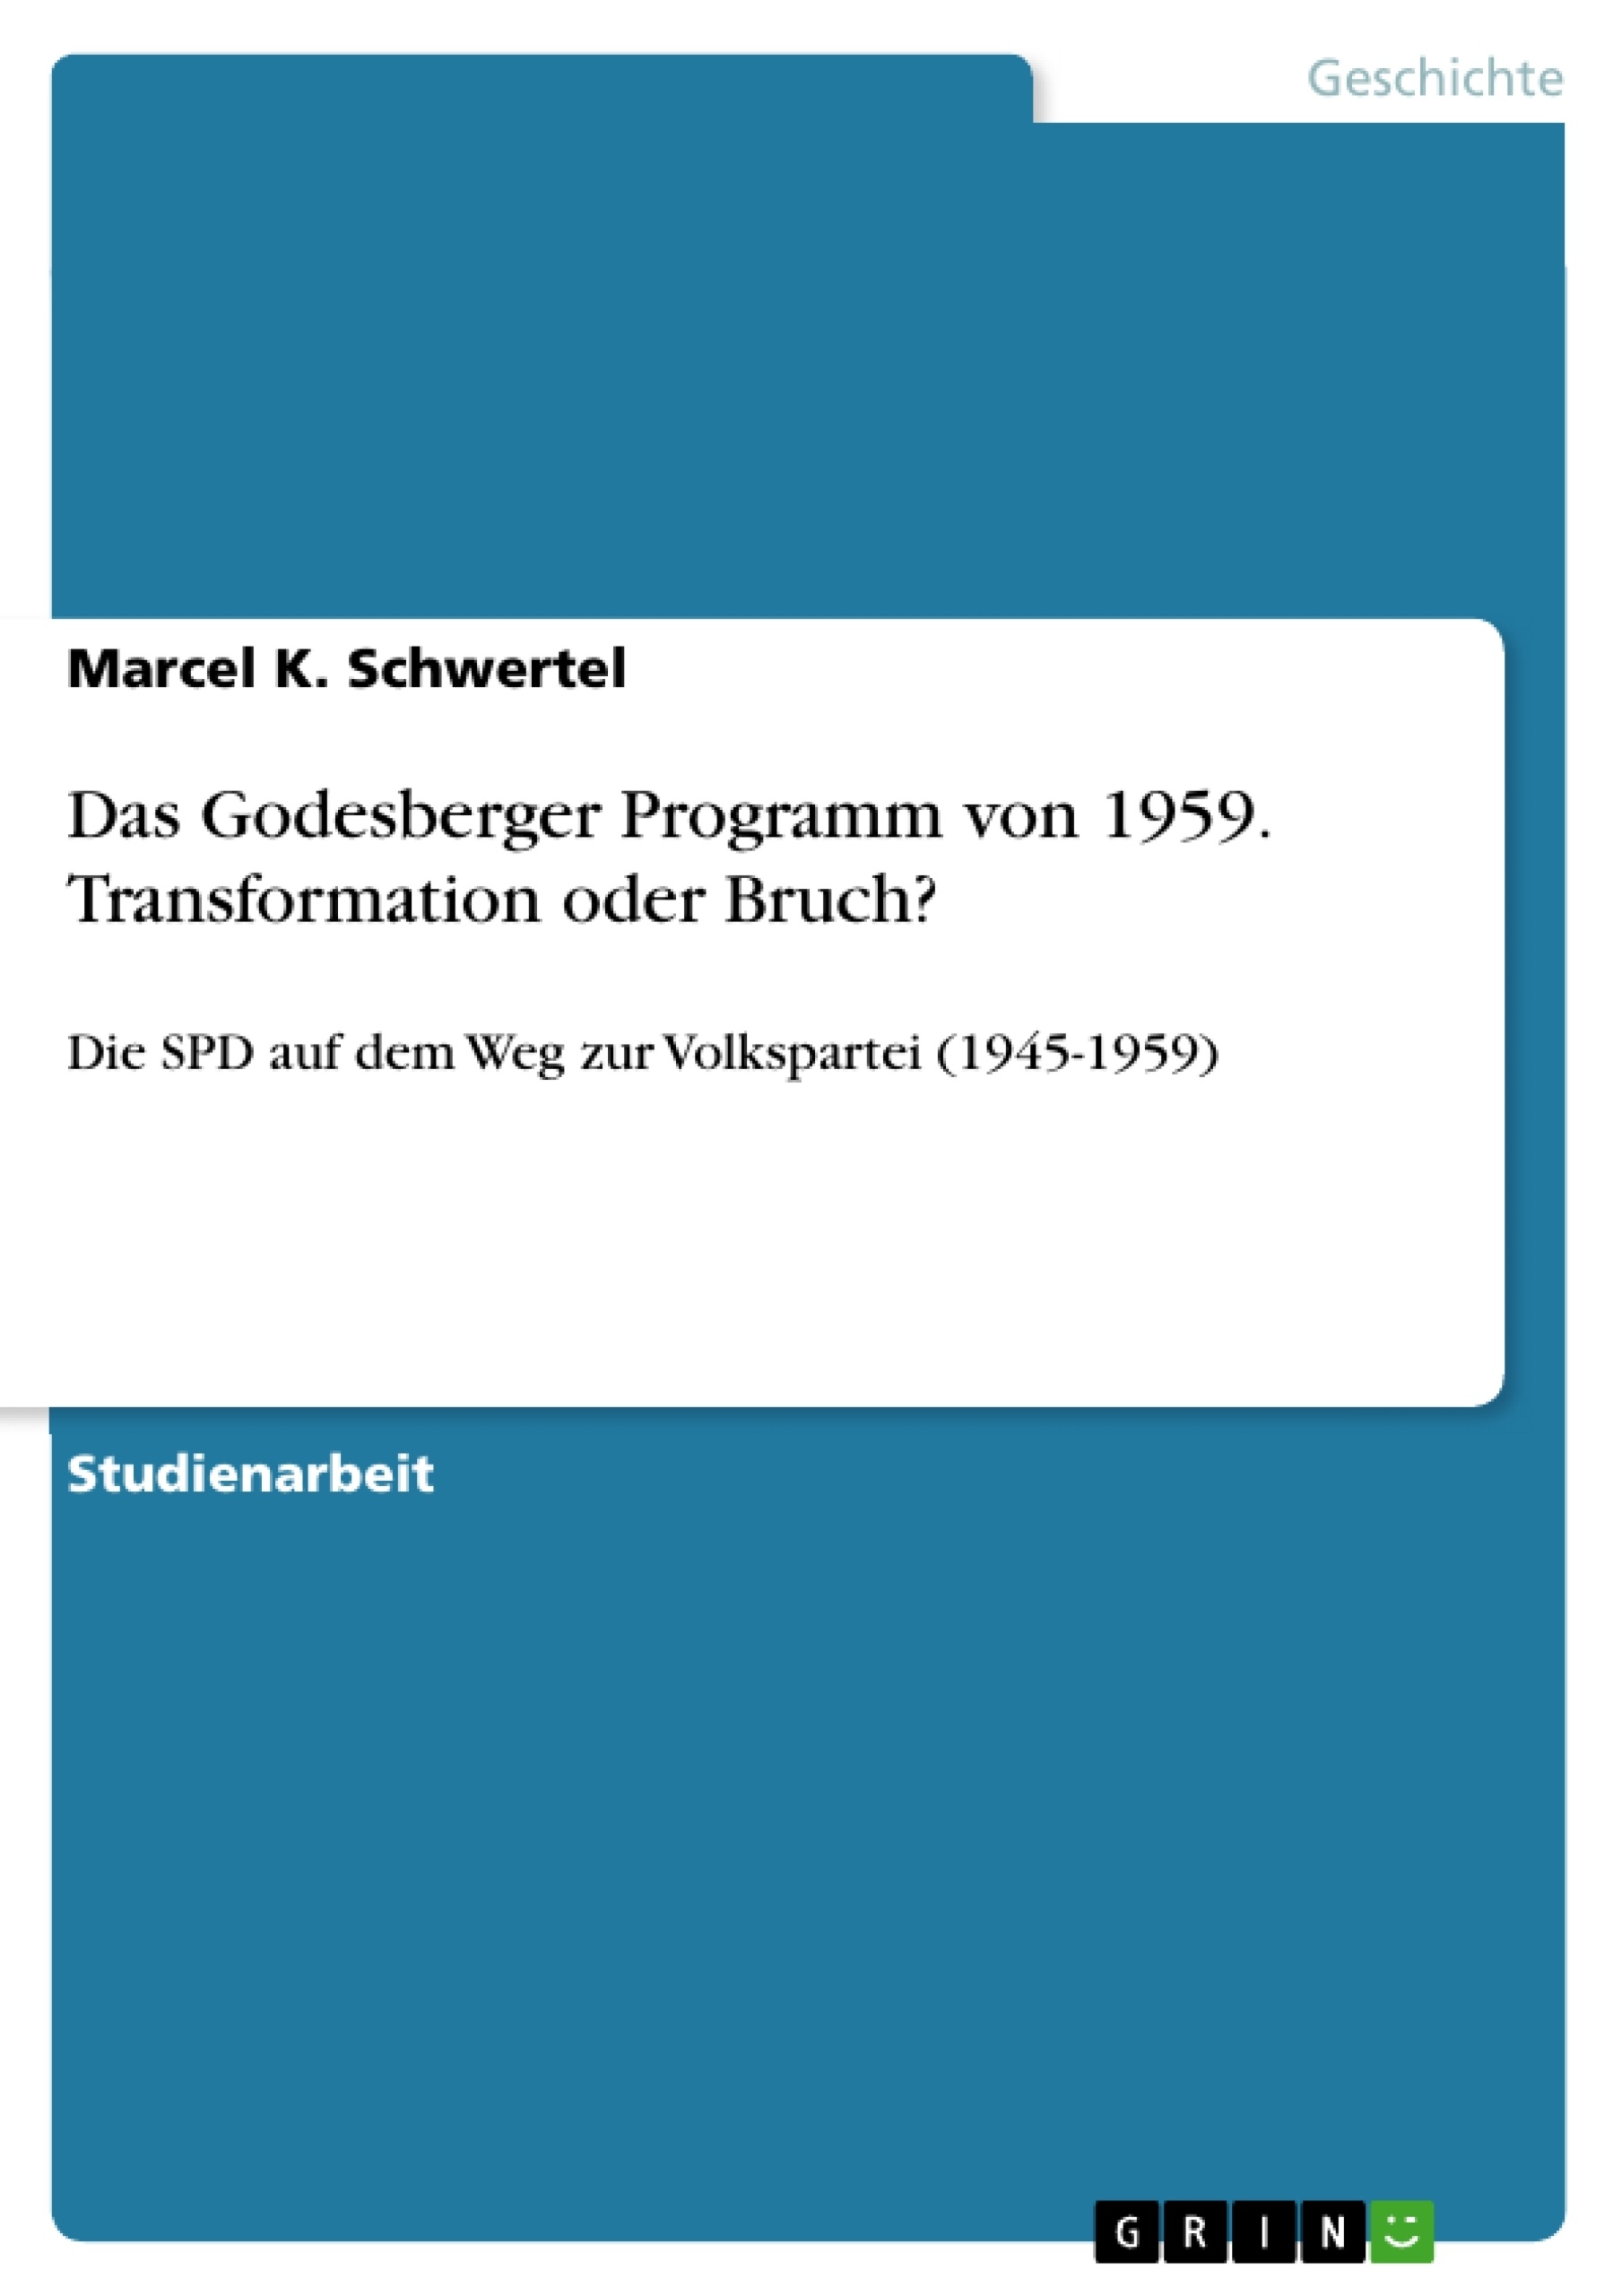 Titre: Das Godesberger Programm von 1959. Transformation oder Bruch?